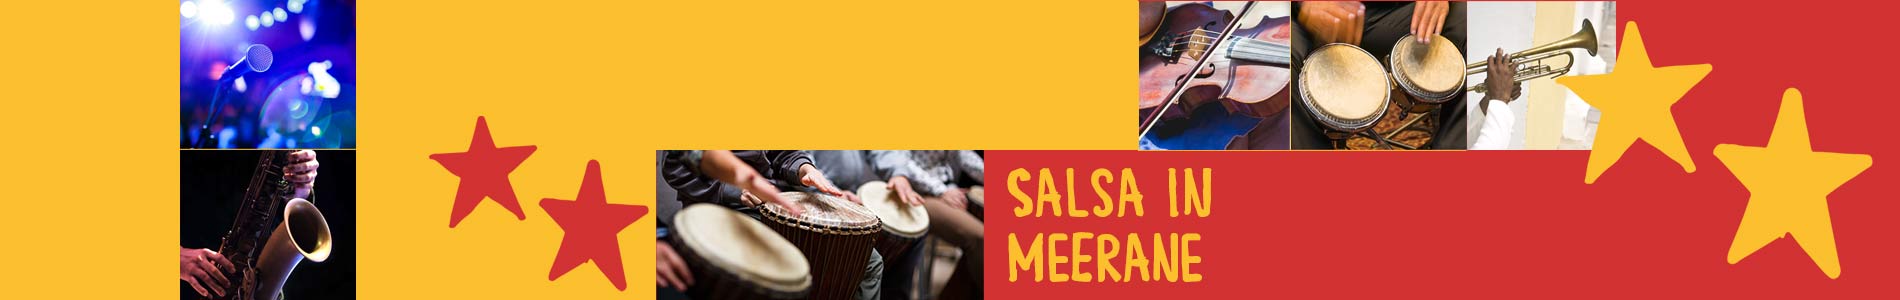 Salsa in Meerane – Salsa lernen und tanzen, Tanzkurse, Partys, Veranstaltungen